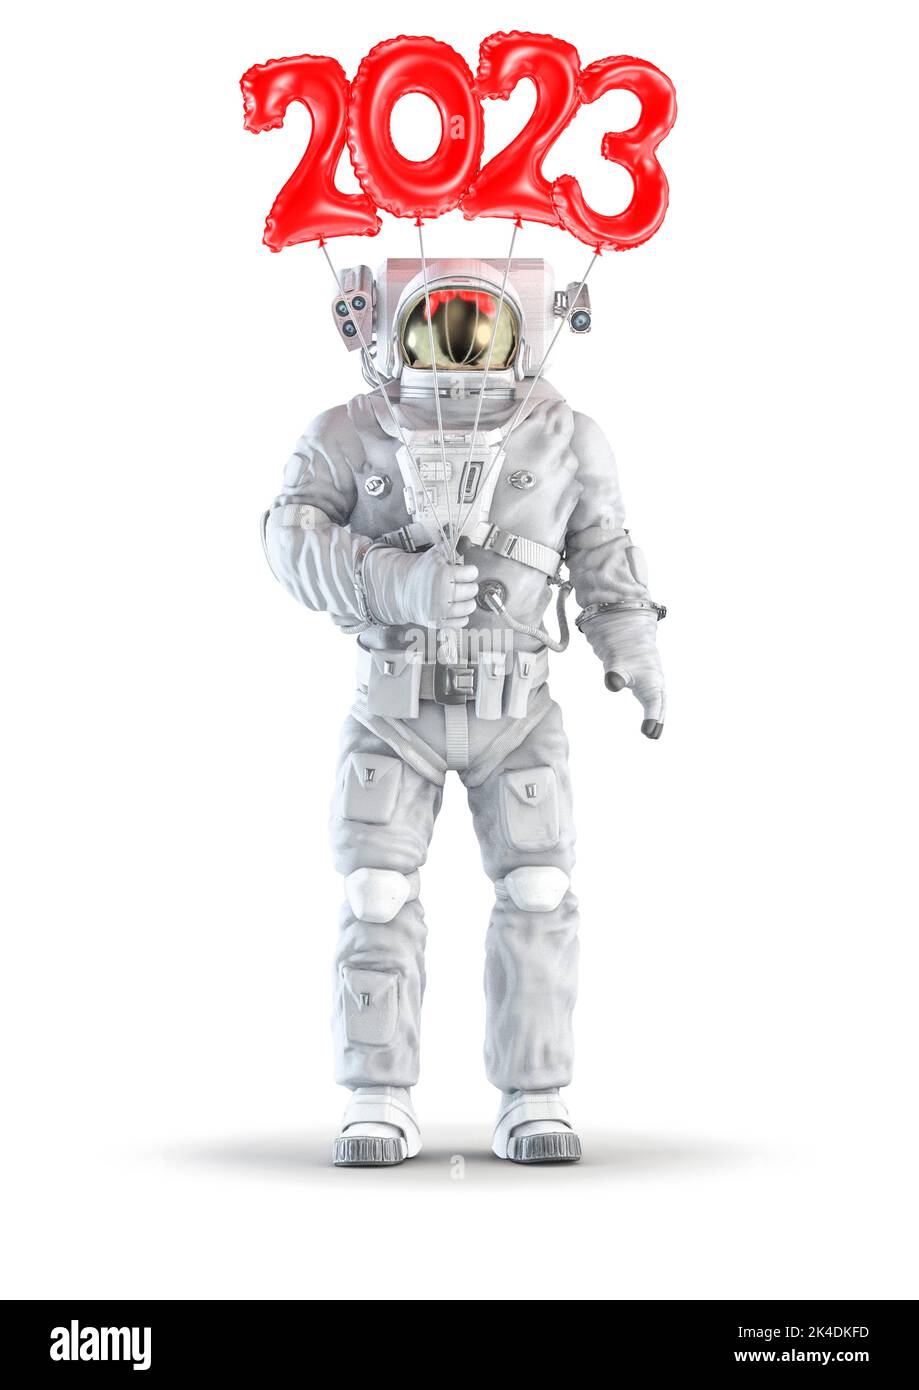 Astronaut mit 2023 Ballon - 3D Abbildung des Raumanzugs trägt männliche Figur mit roten Kunststoff Nummer Jahr 2023 Ballons isoliert auf weißem Studio Stockfoto